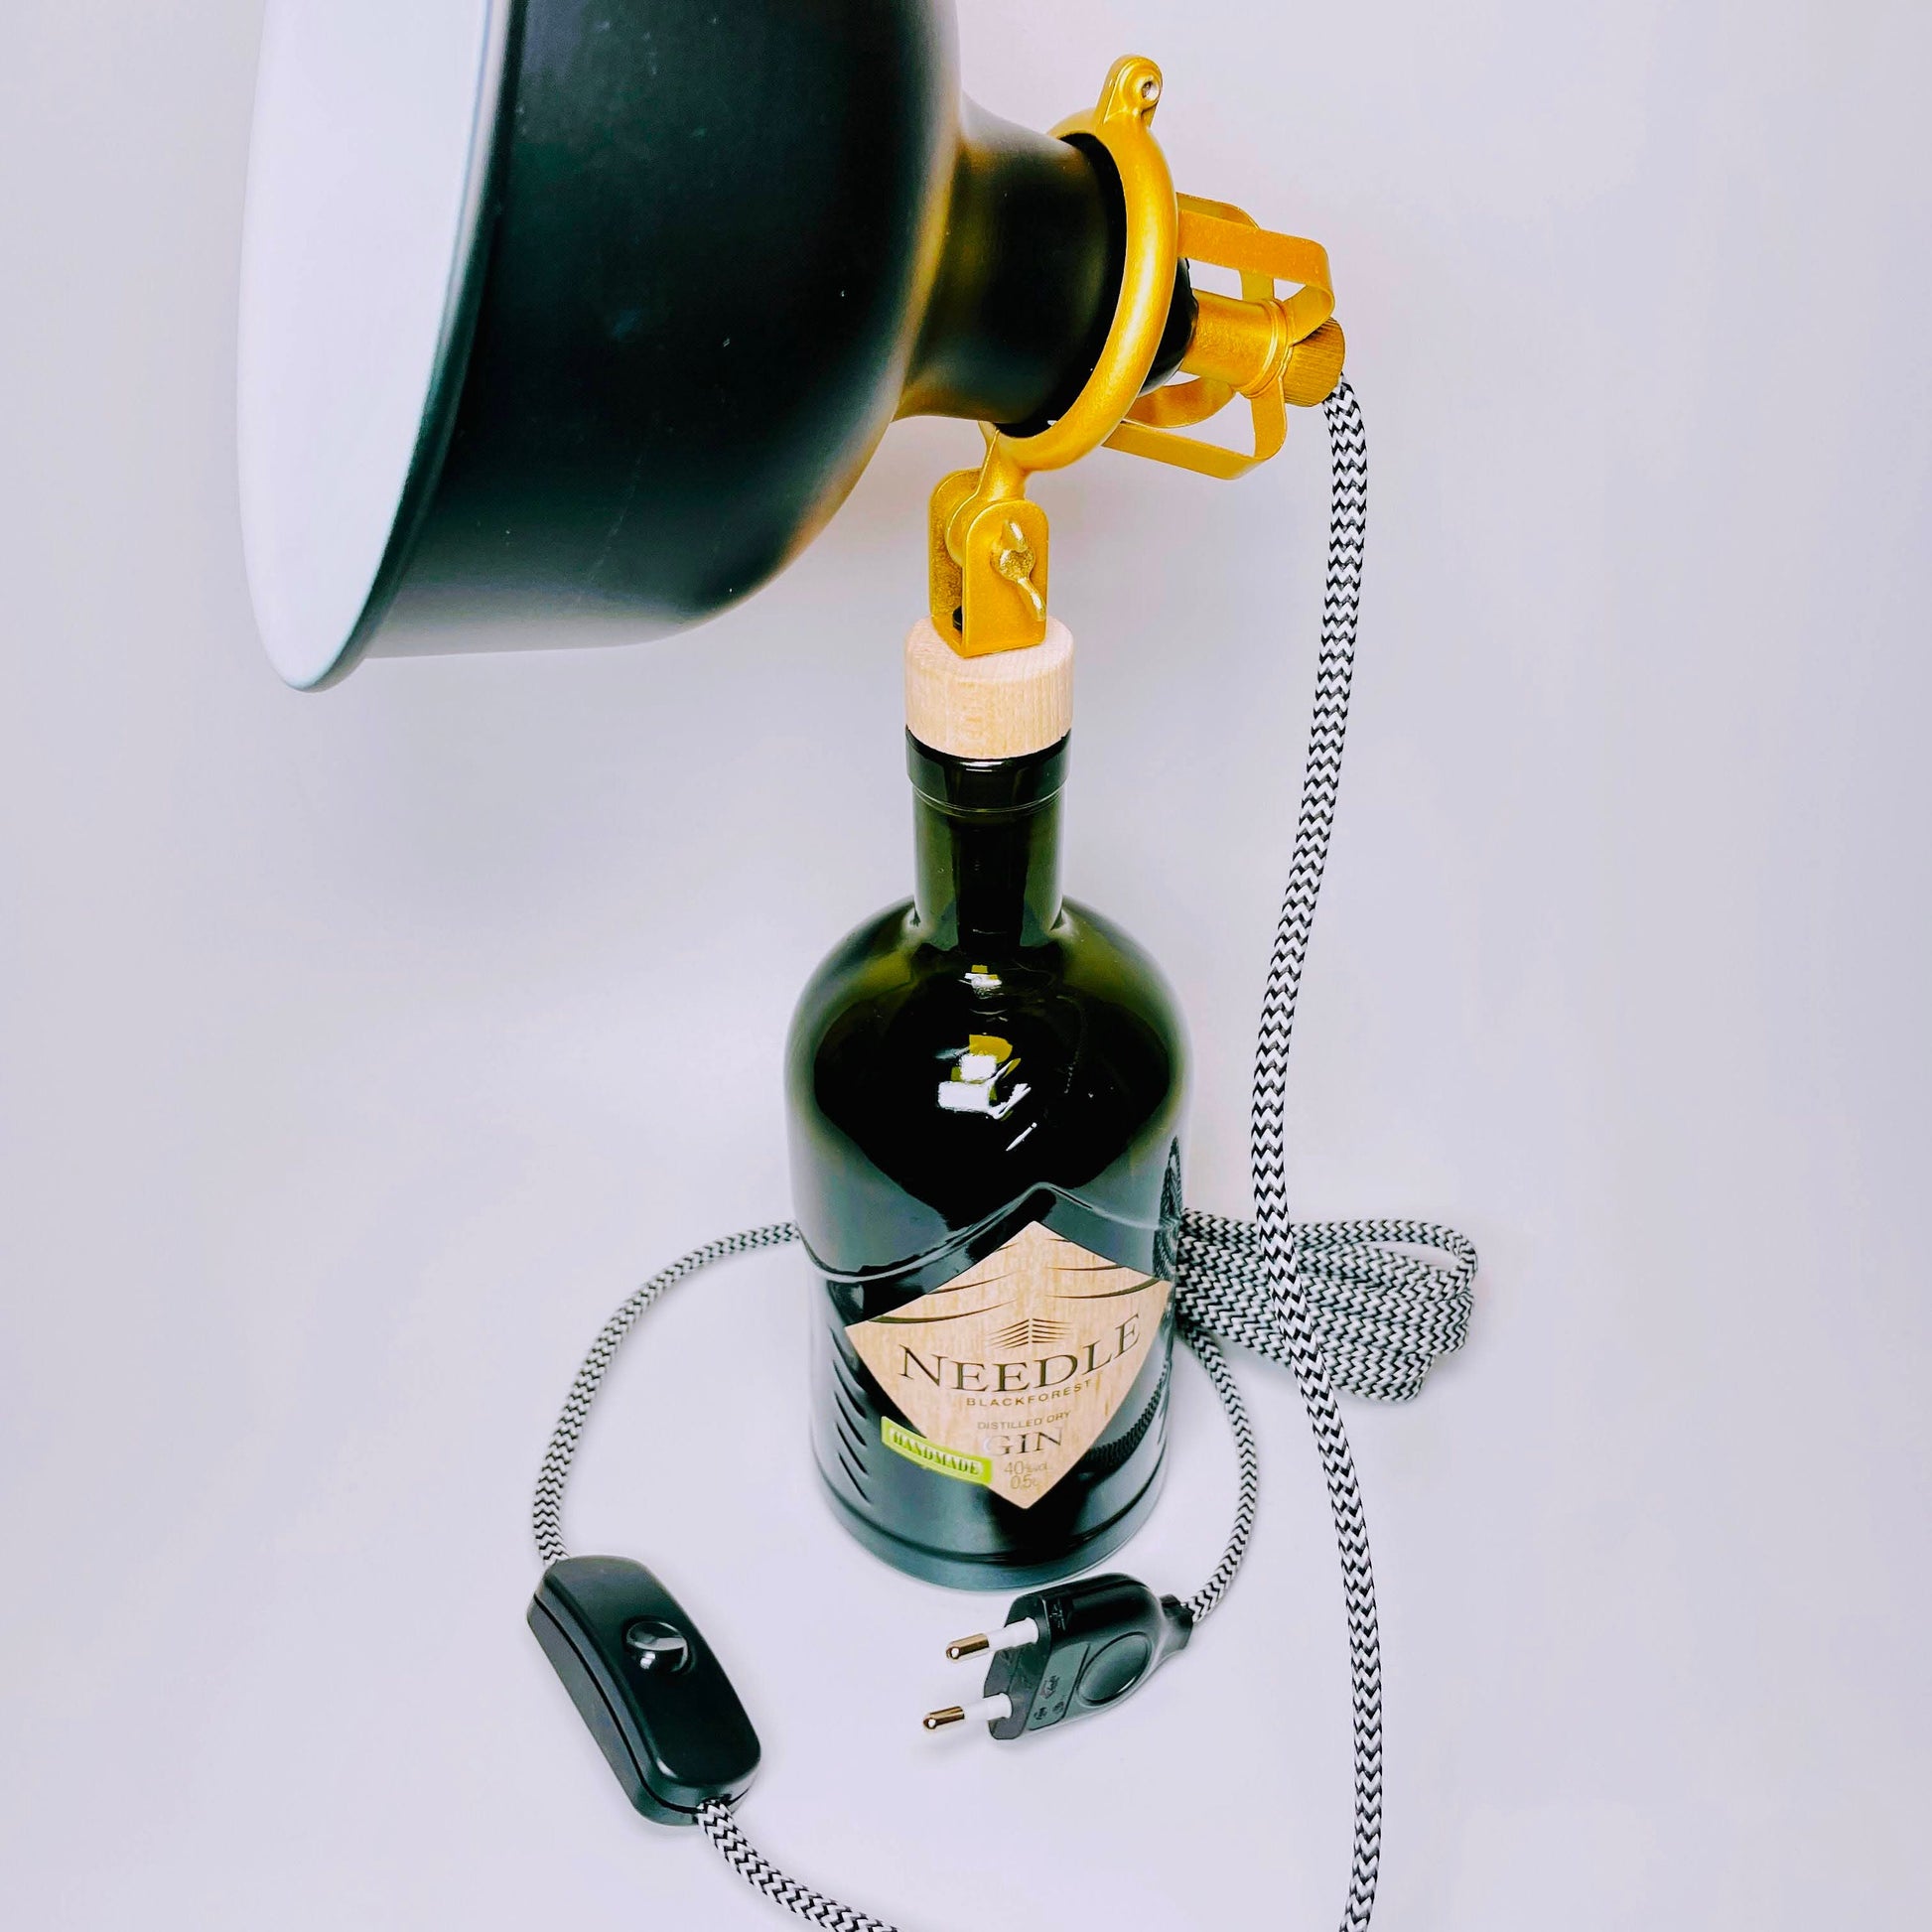 Needle Gin Vintage-Lampe | Handgemachte nachhaltige Tischlampe aus Needle Gin | Einzigartige Geschenkidee | Deko-Licht | Upcycling Leuchte